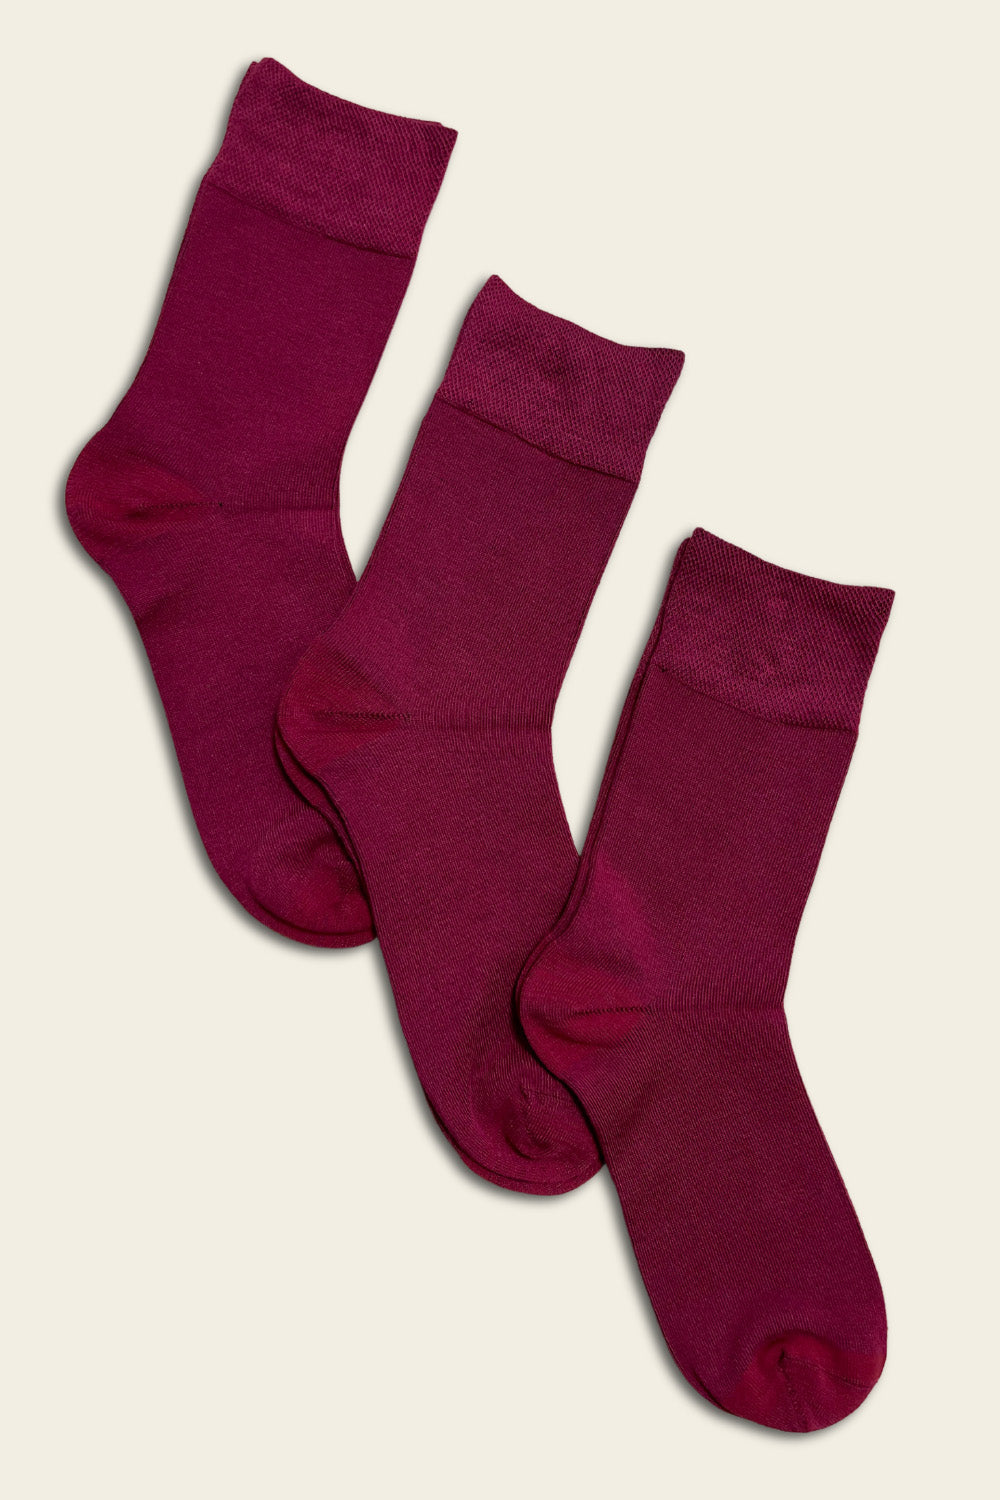 Red seamless Bamboo Socks - 6 pairs